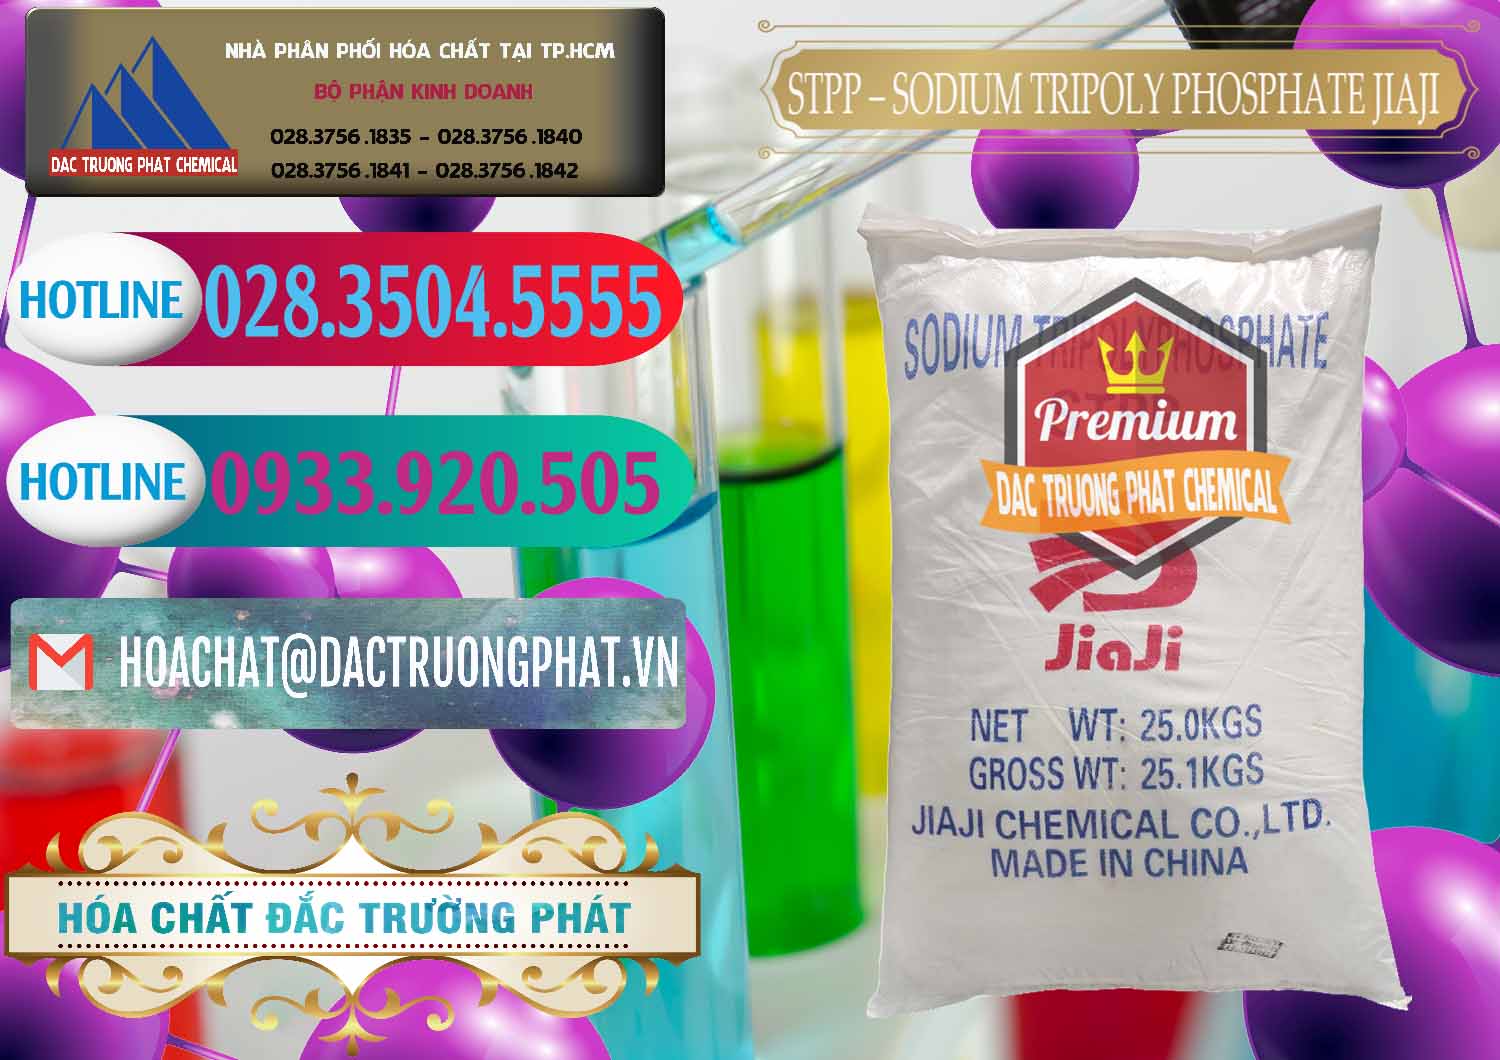 Kinh doanh _ bán Sodium Tripoly Phosphate - STPP Jiaji Trung Quốc China - 0154 - Nhà cung cấp - phân phối hóa chất tại TP.HCM - truongphat.vn